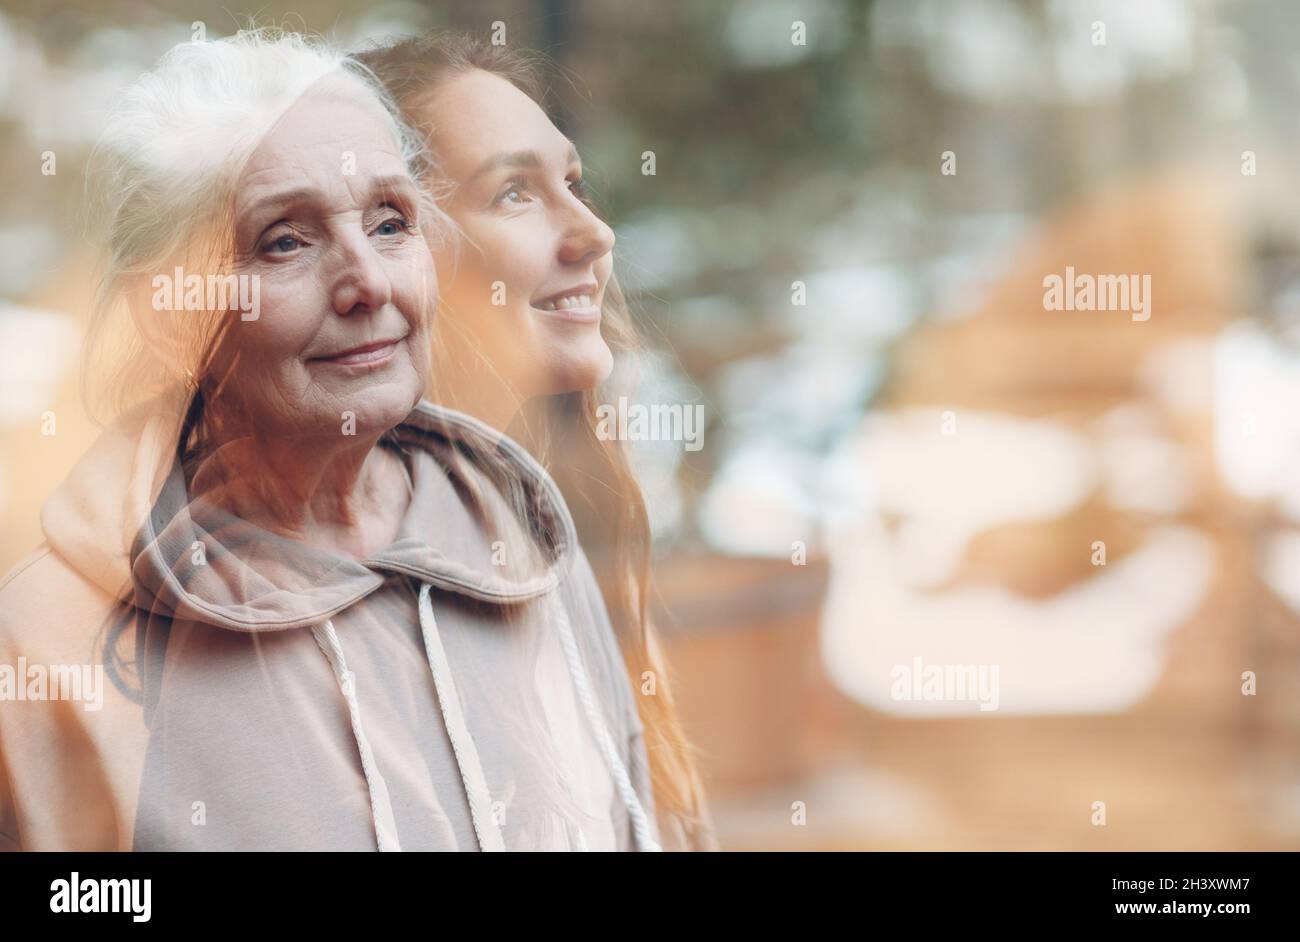 Großmutter und Enkelin Frauen doppelte Belichtung Bild. Porträt einer jungen und älteren Frau. Liebe, Träume und glückliche Familie relat Stockfoto